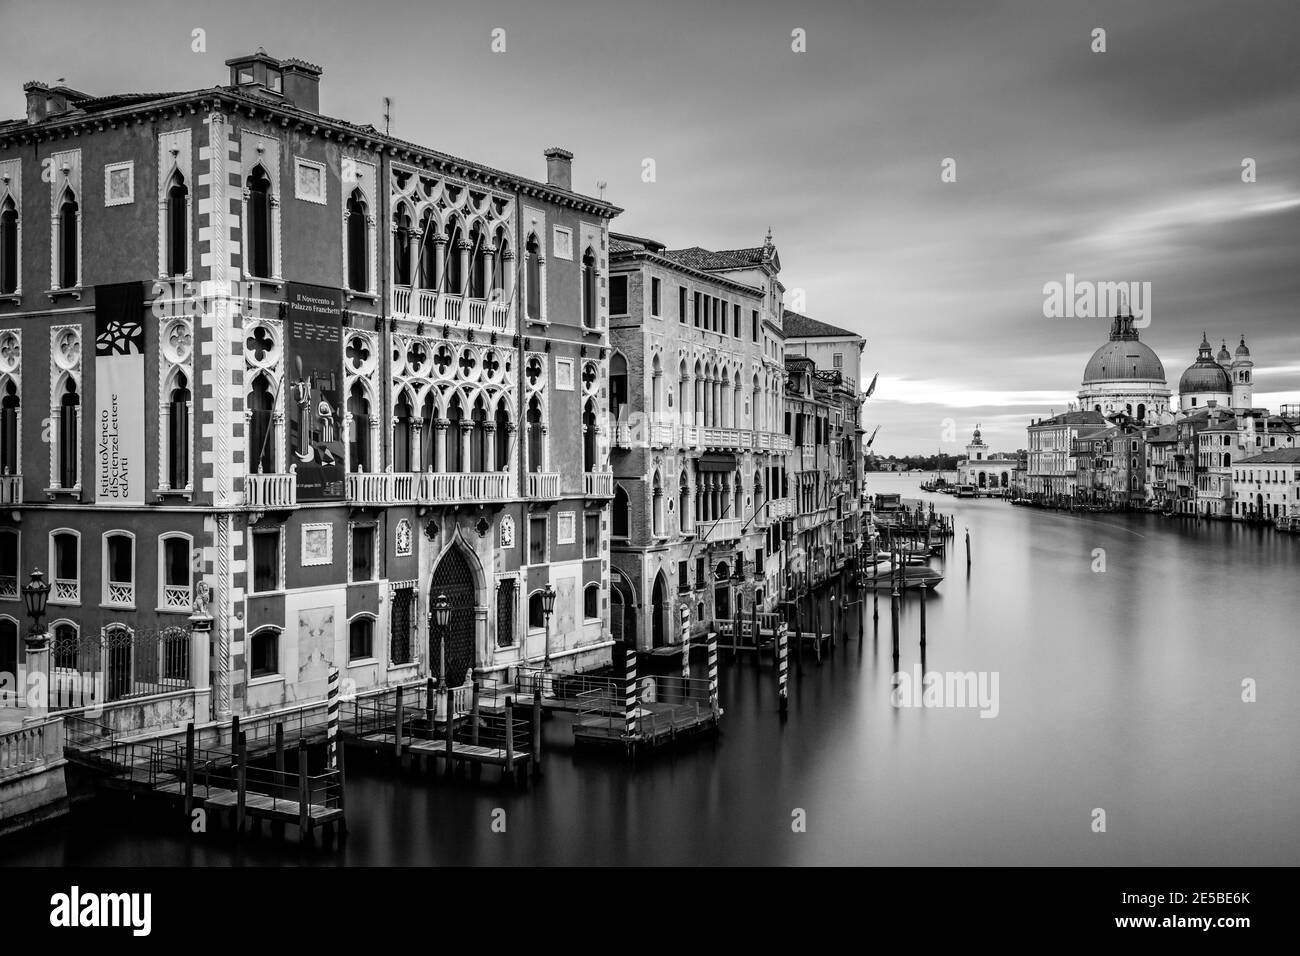 Vue sur le Grand Canal prise du pont de l'Accademia, Venise, la région de Vénétie, Italie. Banque D'Images